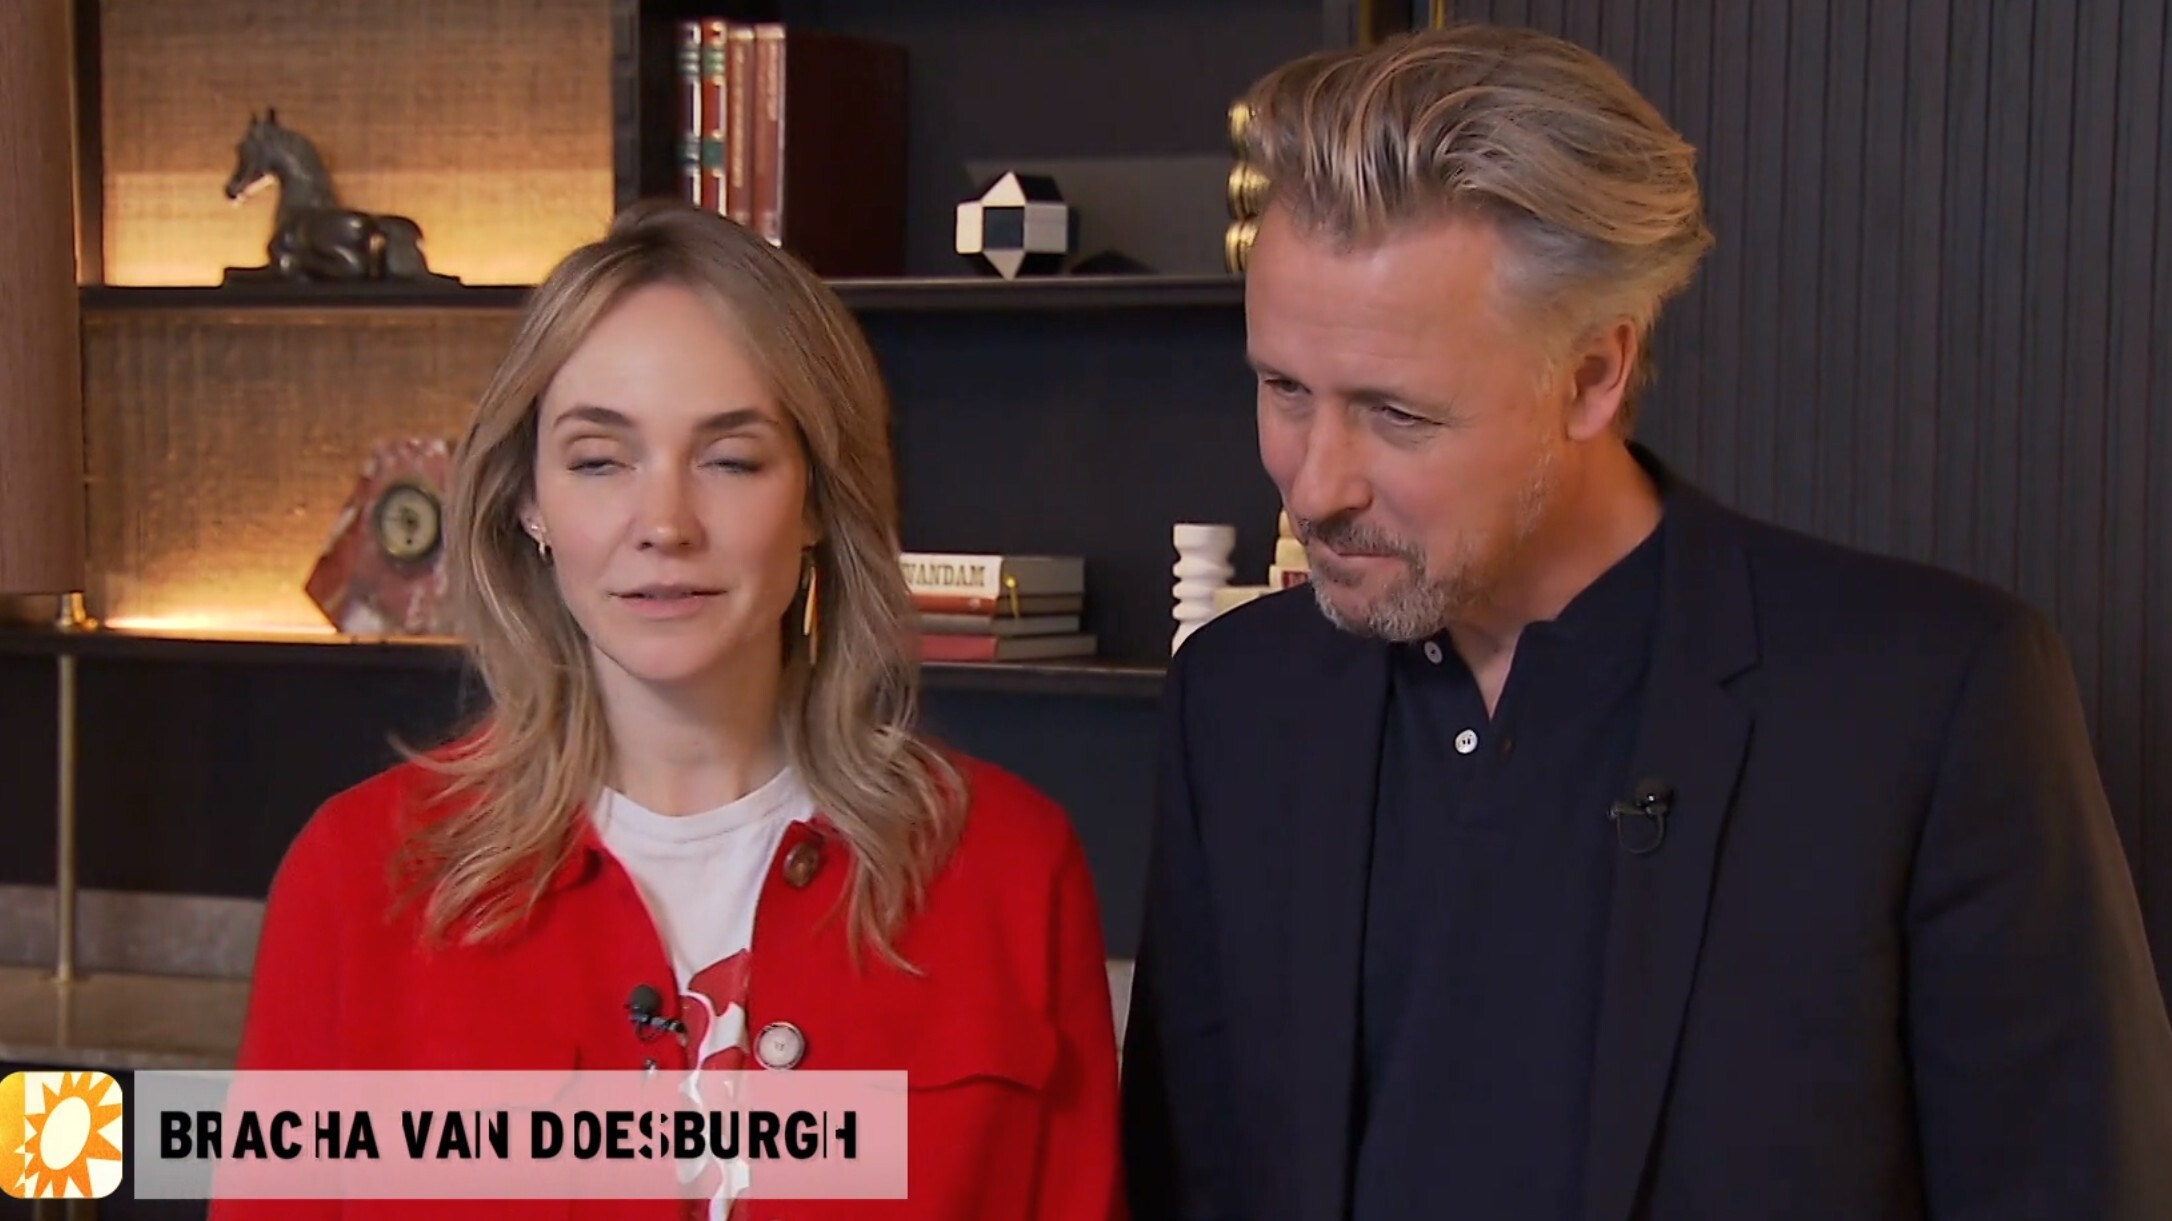 Daan Schuurmans en Bracha van Doesburgh maken droom waar met Piece of my Heart (RTL Boulevard)
